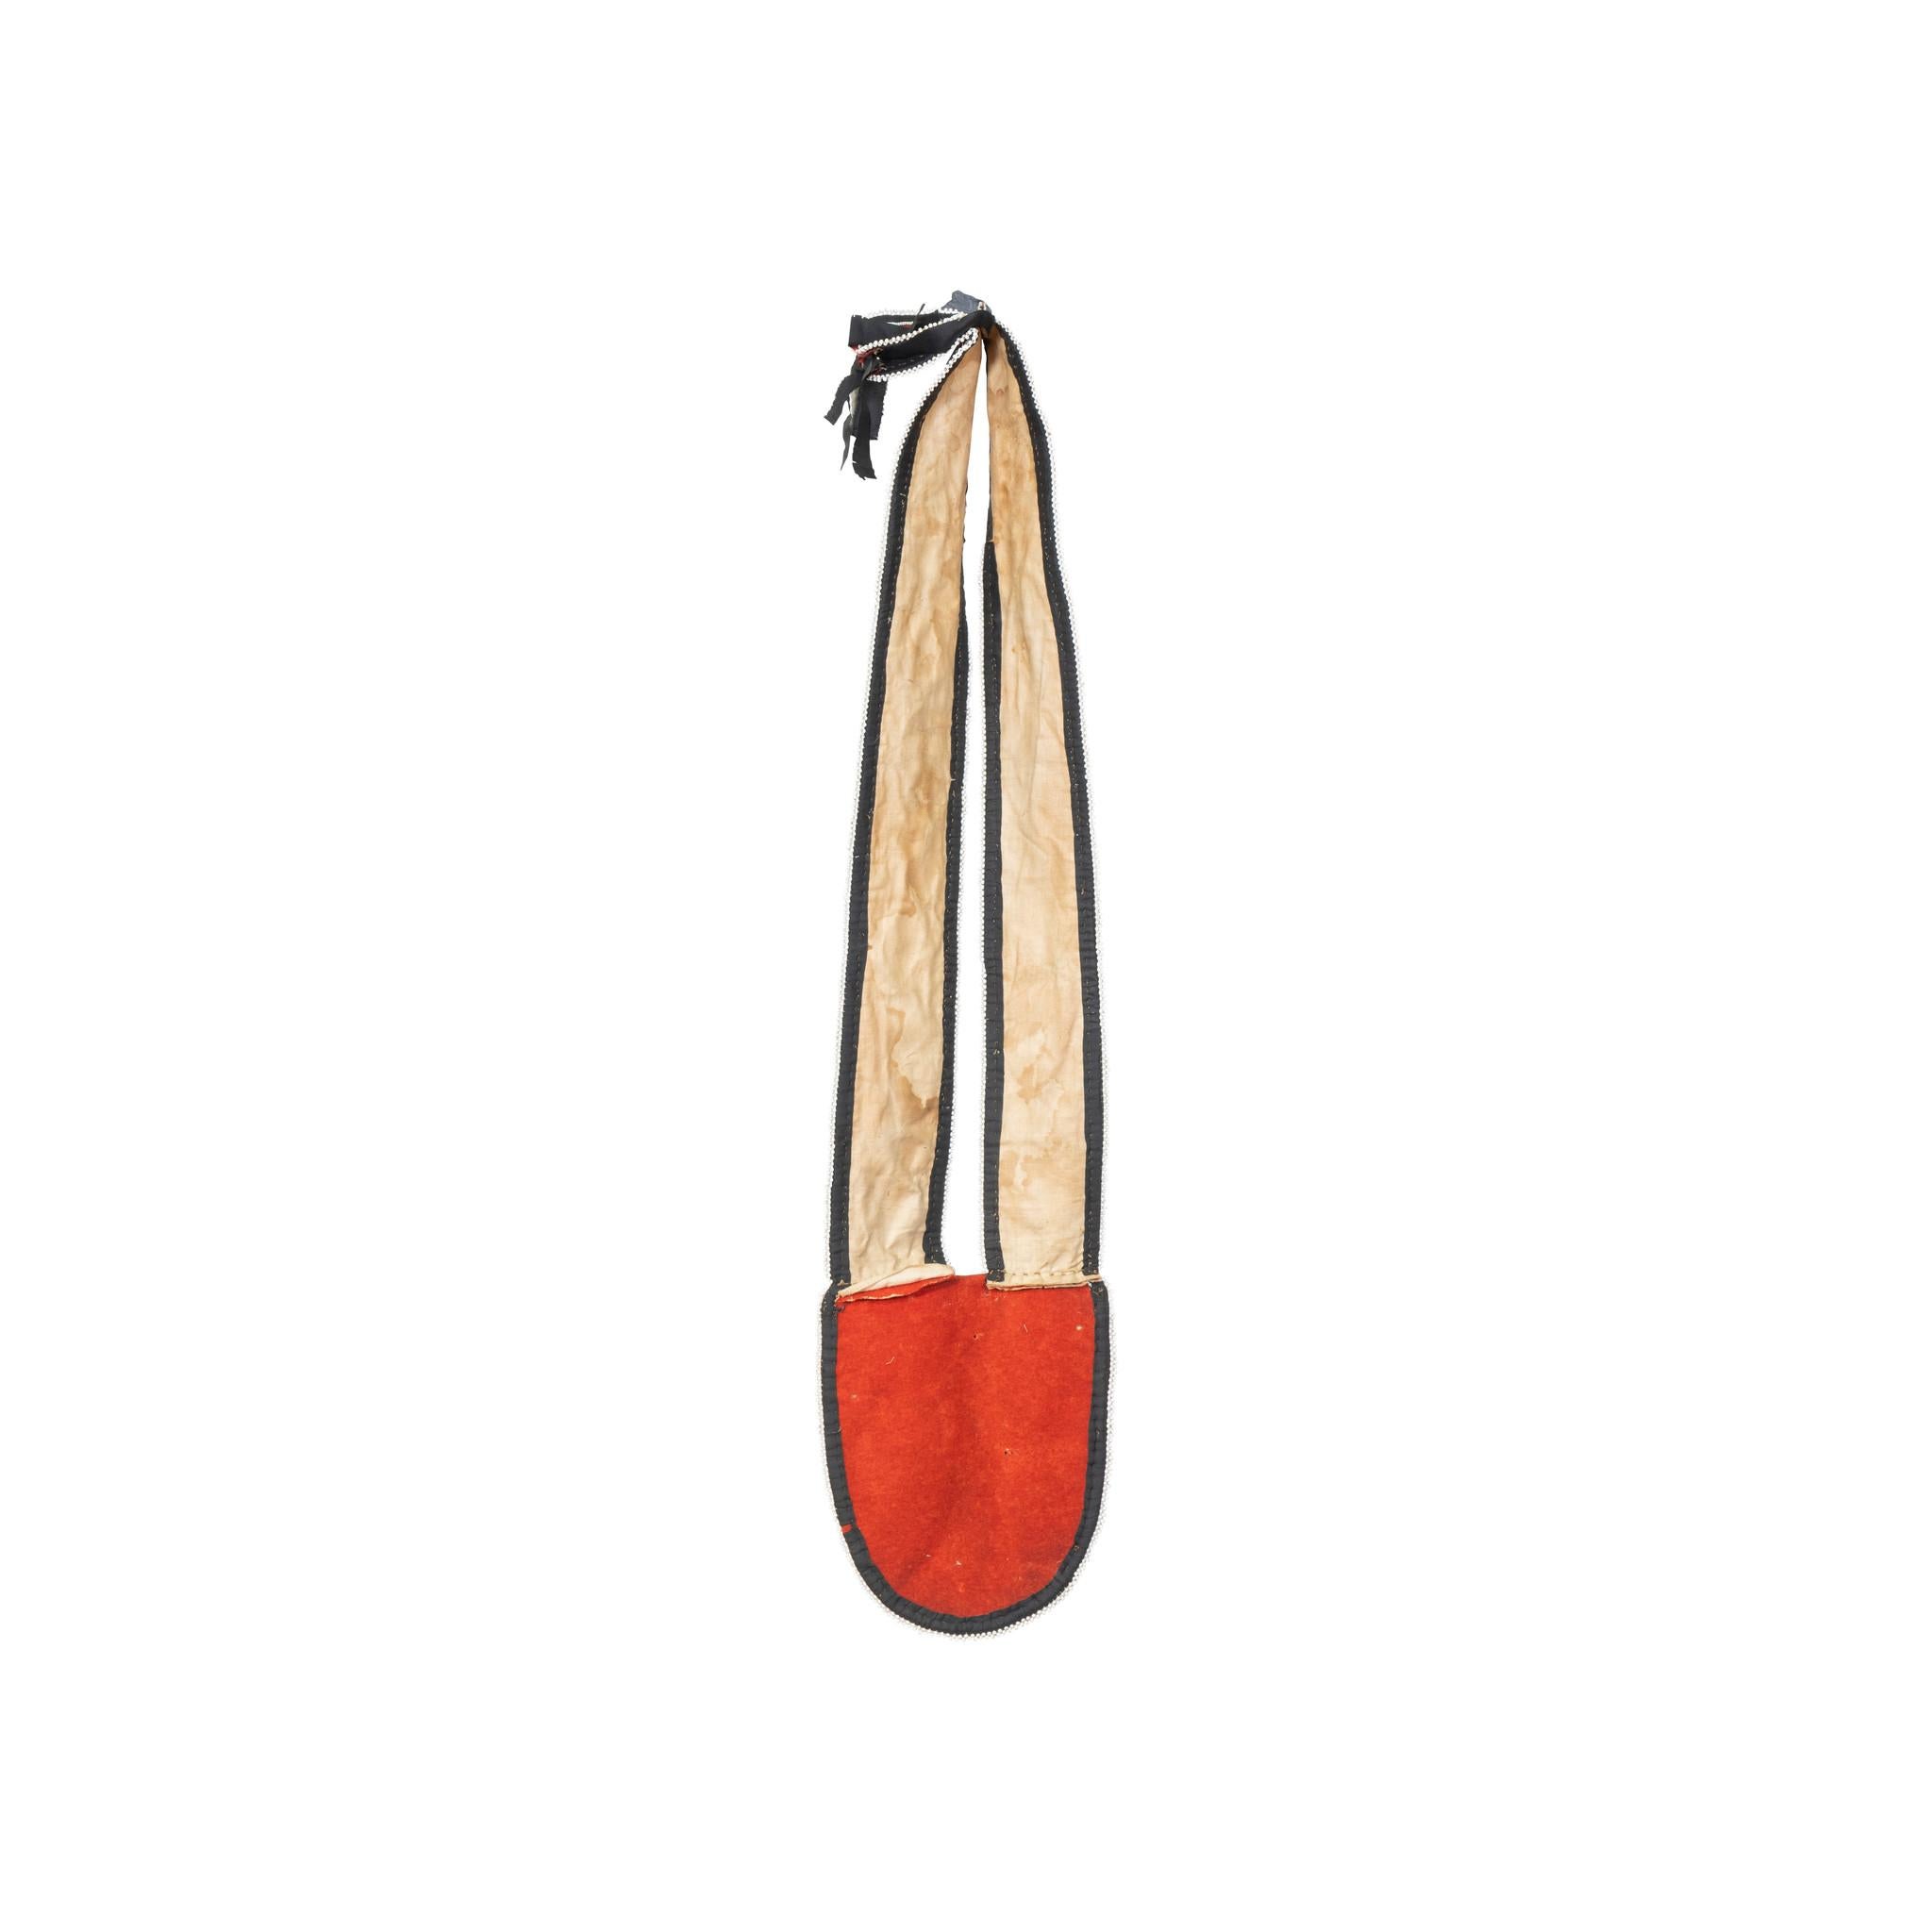 Bandolière Métis Cree avec perlage classique sur Whiting rouge avec bordure de perles blanches et ruban de soie noir.

Période : Milieu du 19e siècle
Origine : Métis Cree
Taille : 30